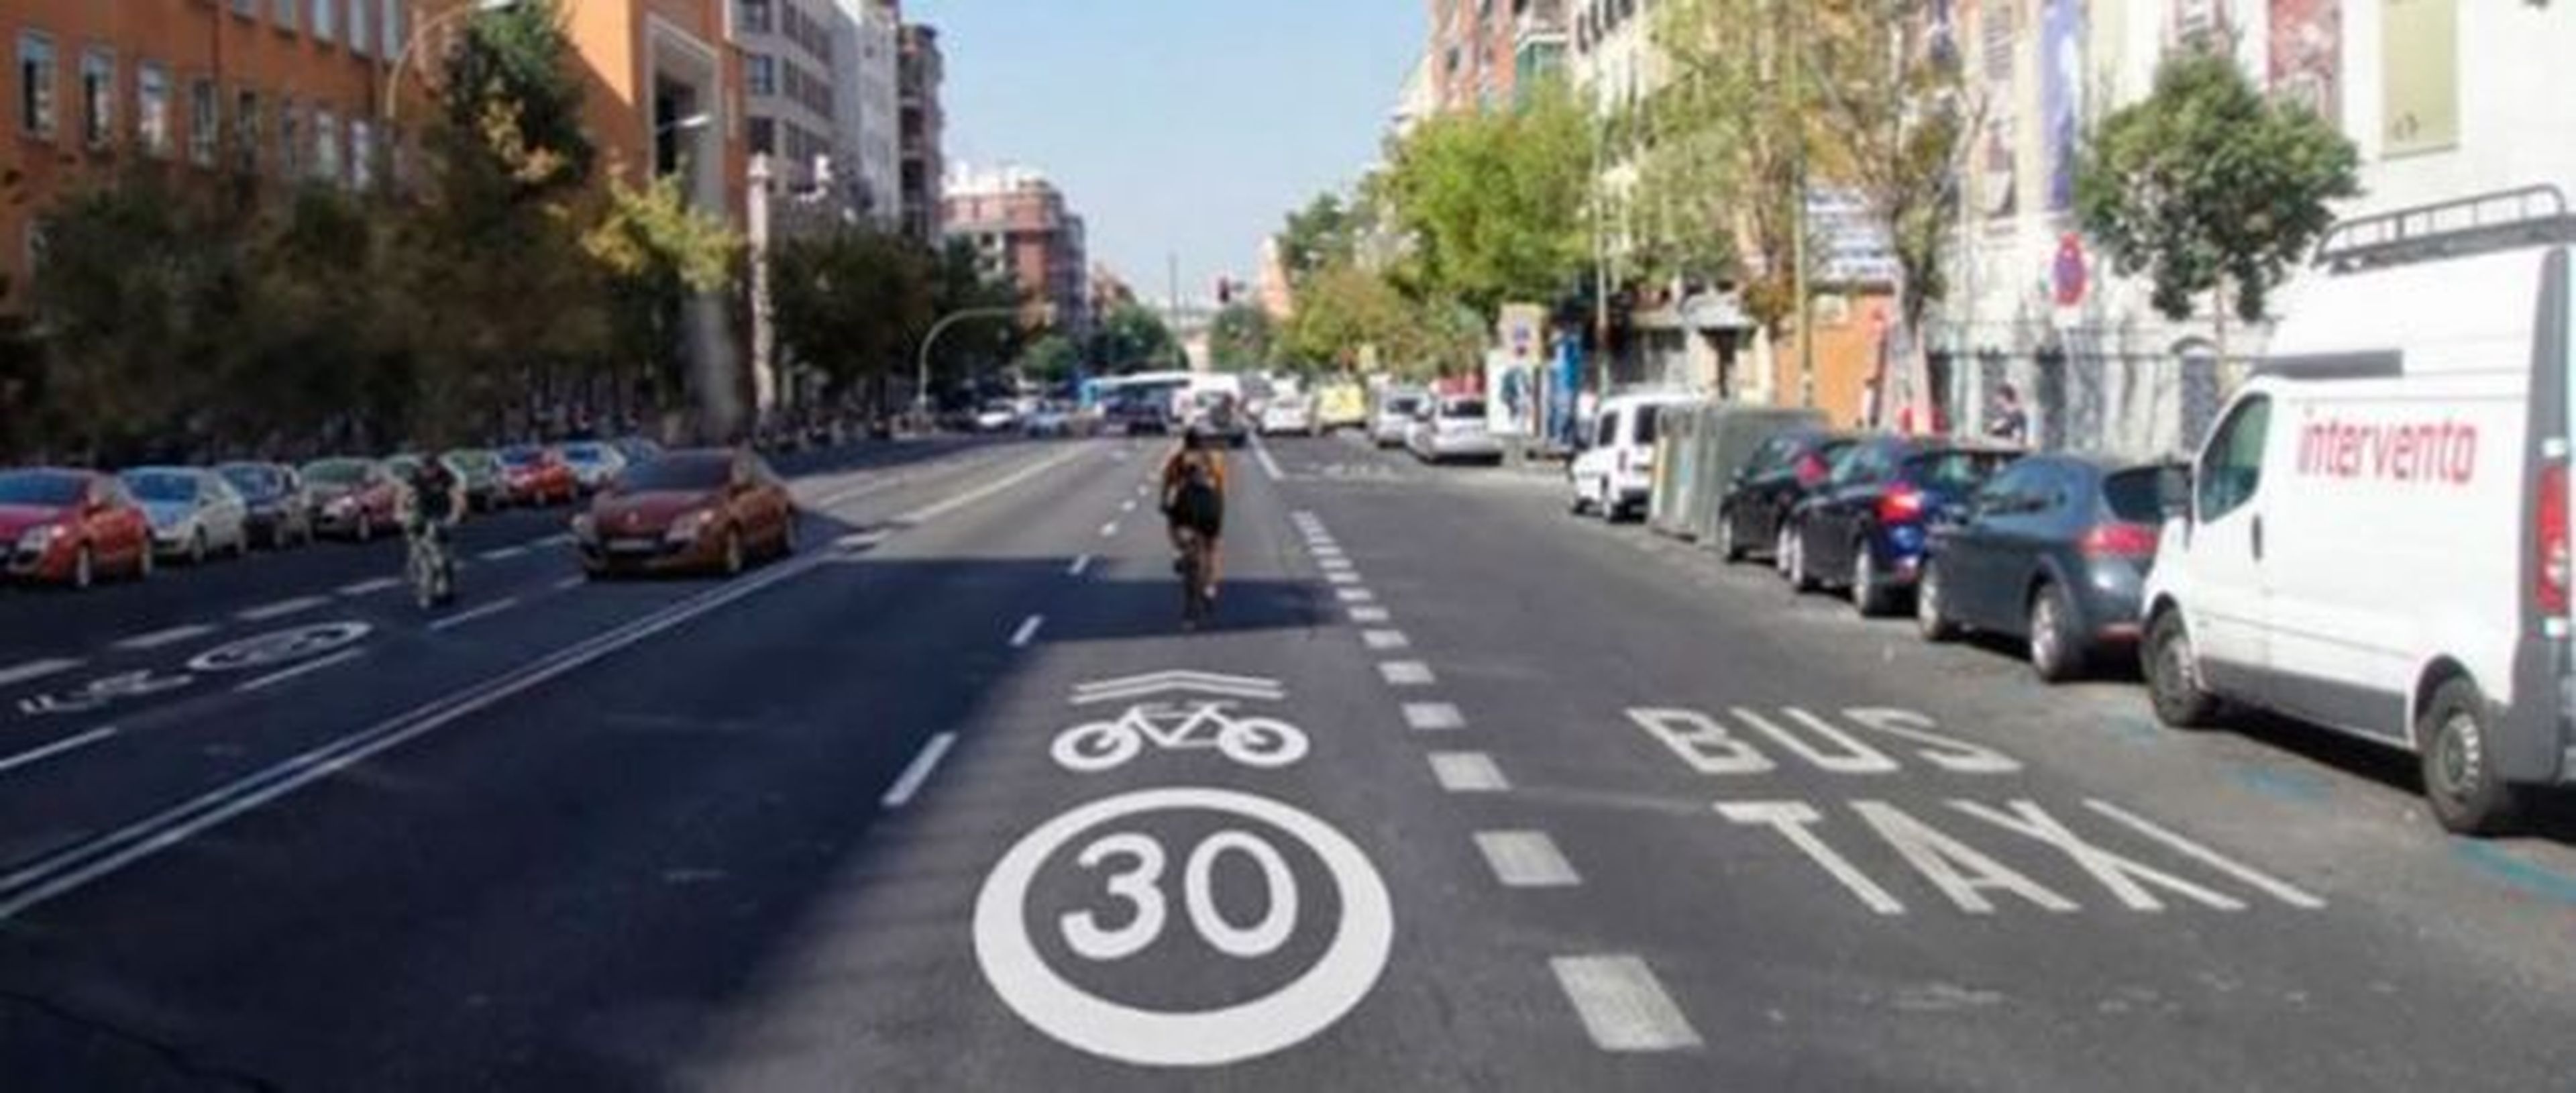 Ordenanza de movilidad de Madrid